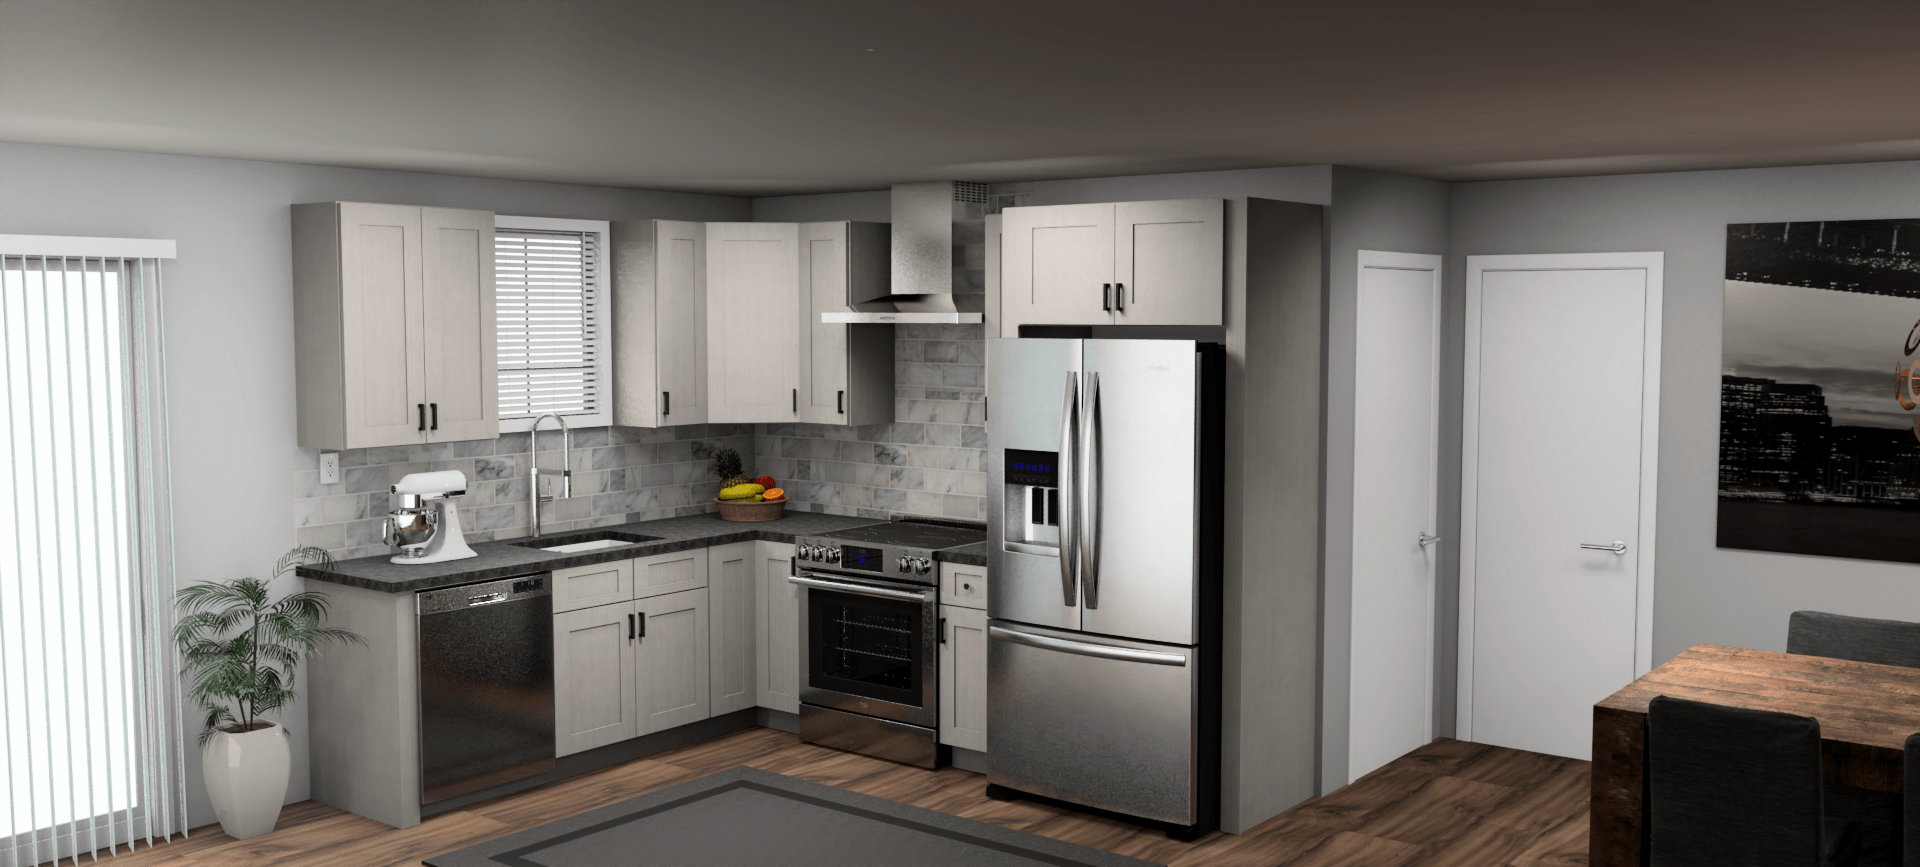 Fabuwood Allure Galaxy Horizon 8 x 10 L Shaped Kitchen Main Layout Photo